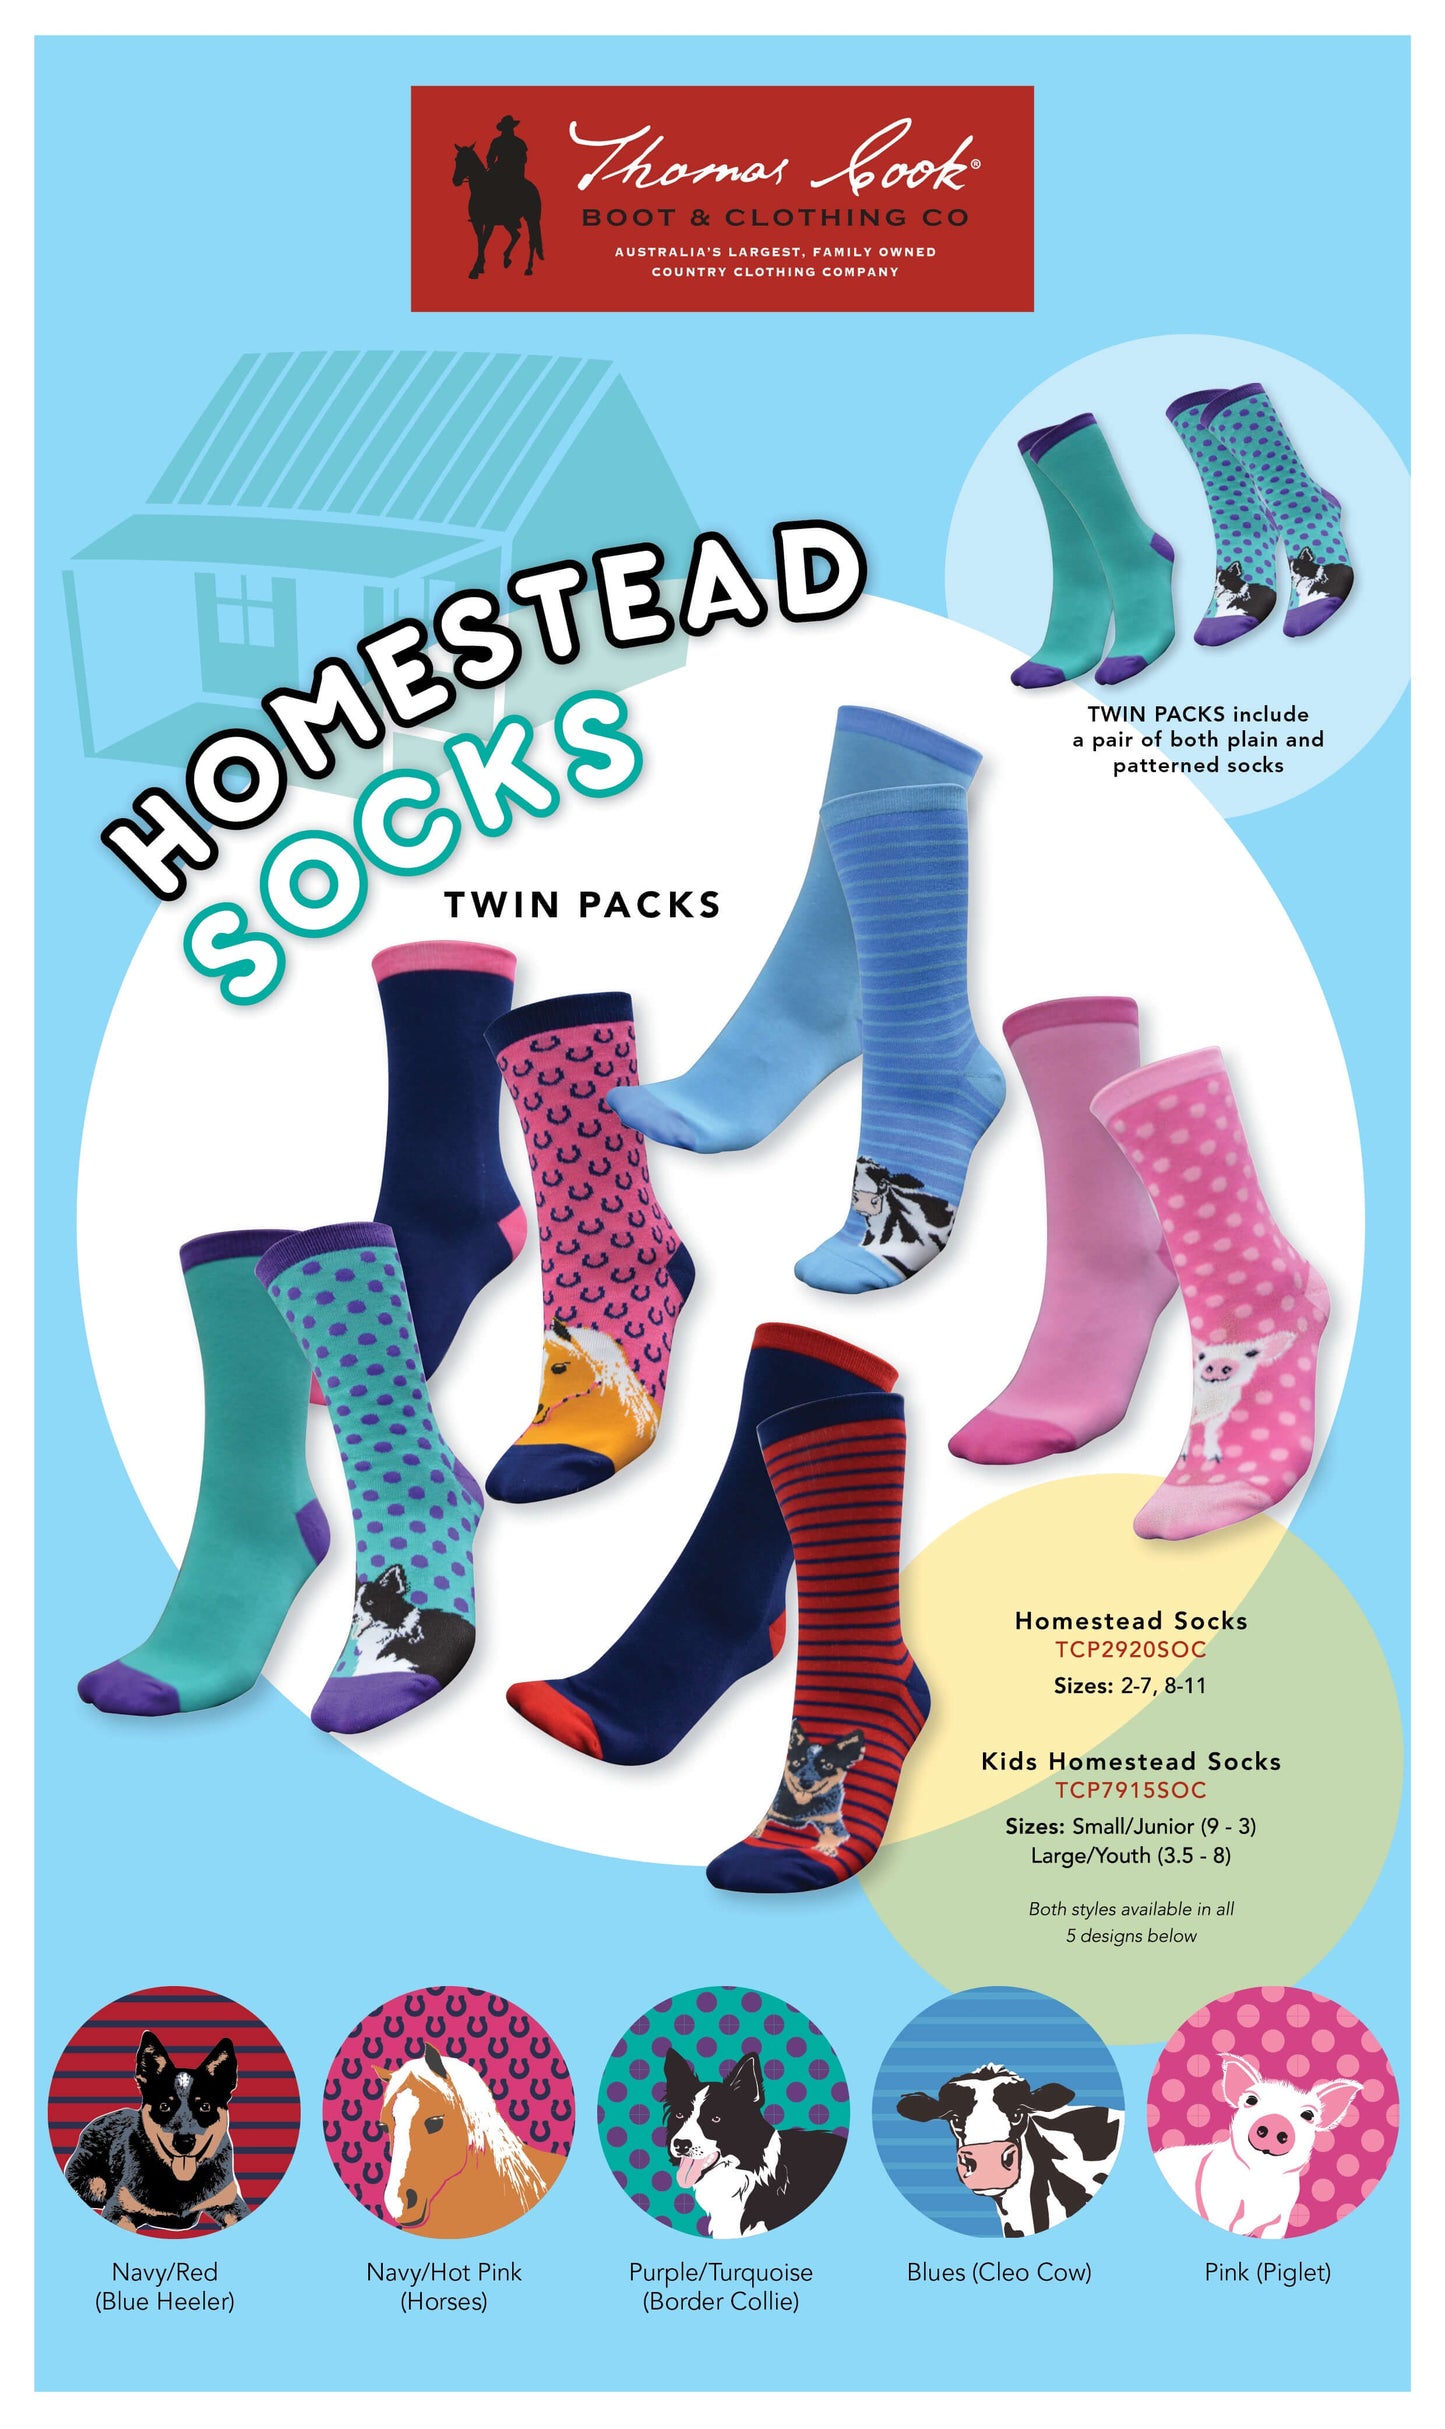 ADULT - Thomas Cook Homestead Socks 2 Pack